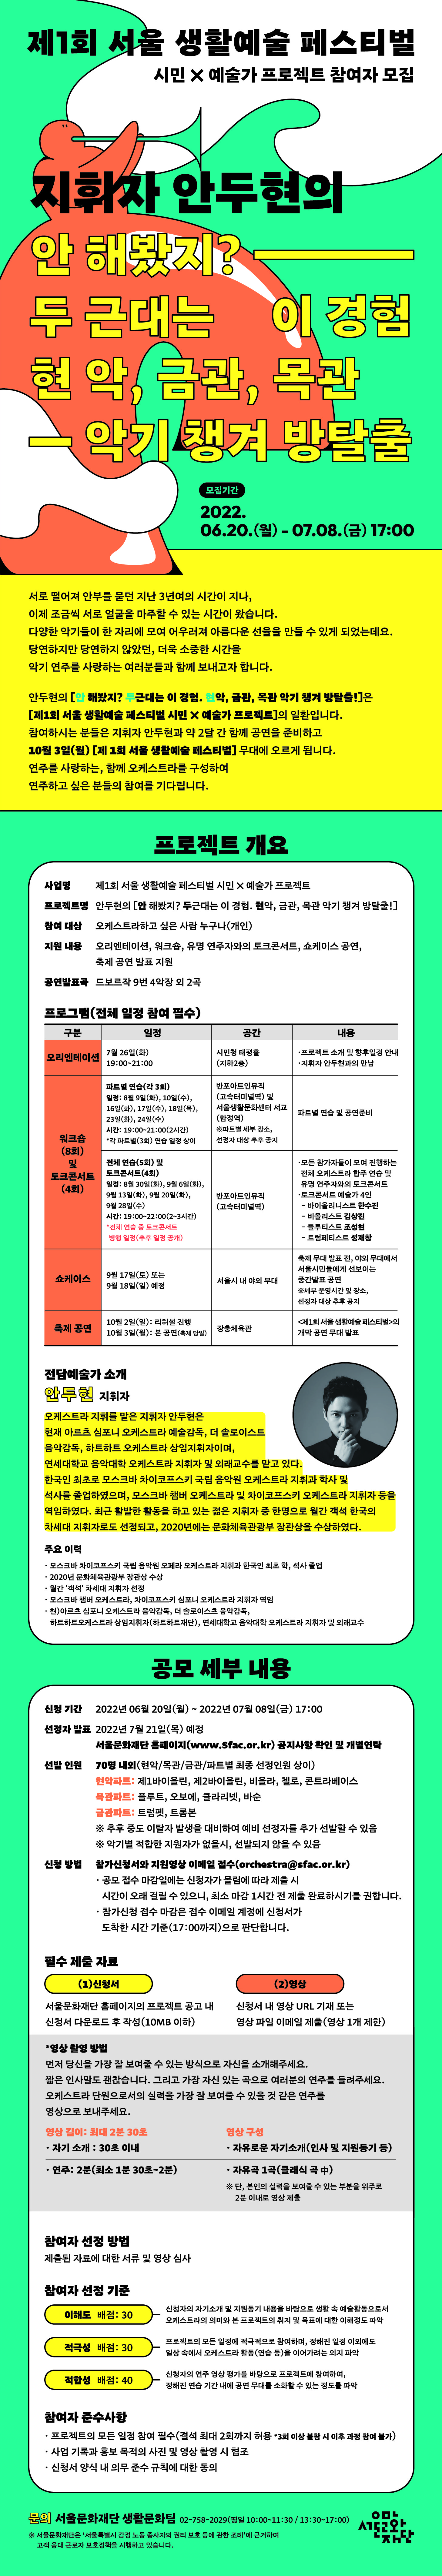 제1회 서울 생활예술 페스티벌 시민X예술가 프로젝트(오케스트라) 참여자 모집